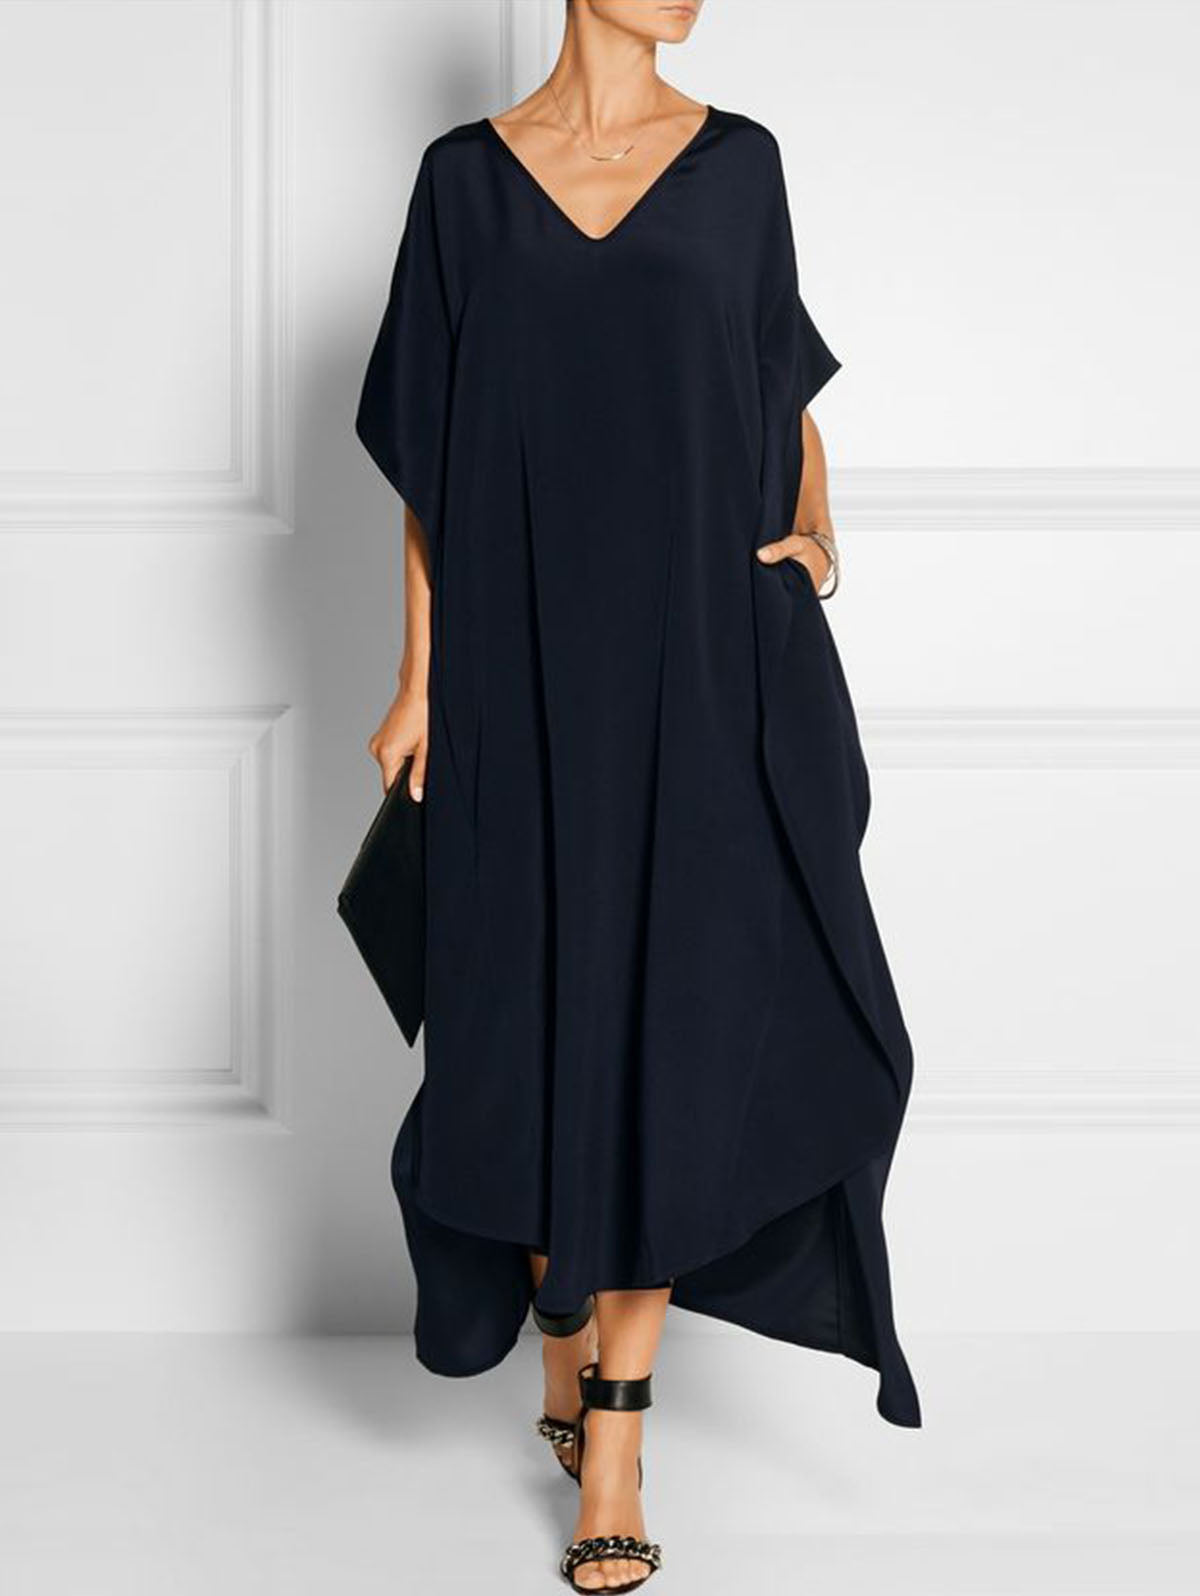 Elegant Black V Neck Short Sleeve Loose Dress